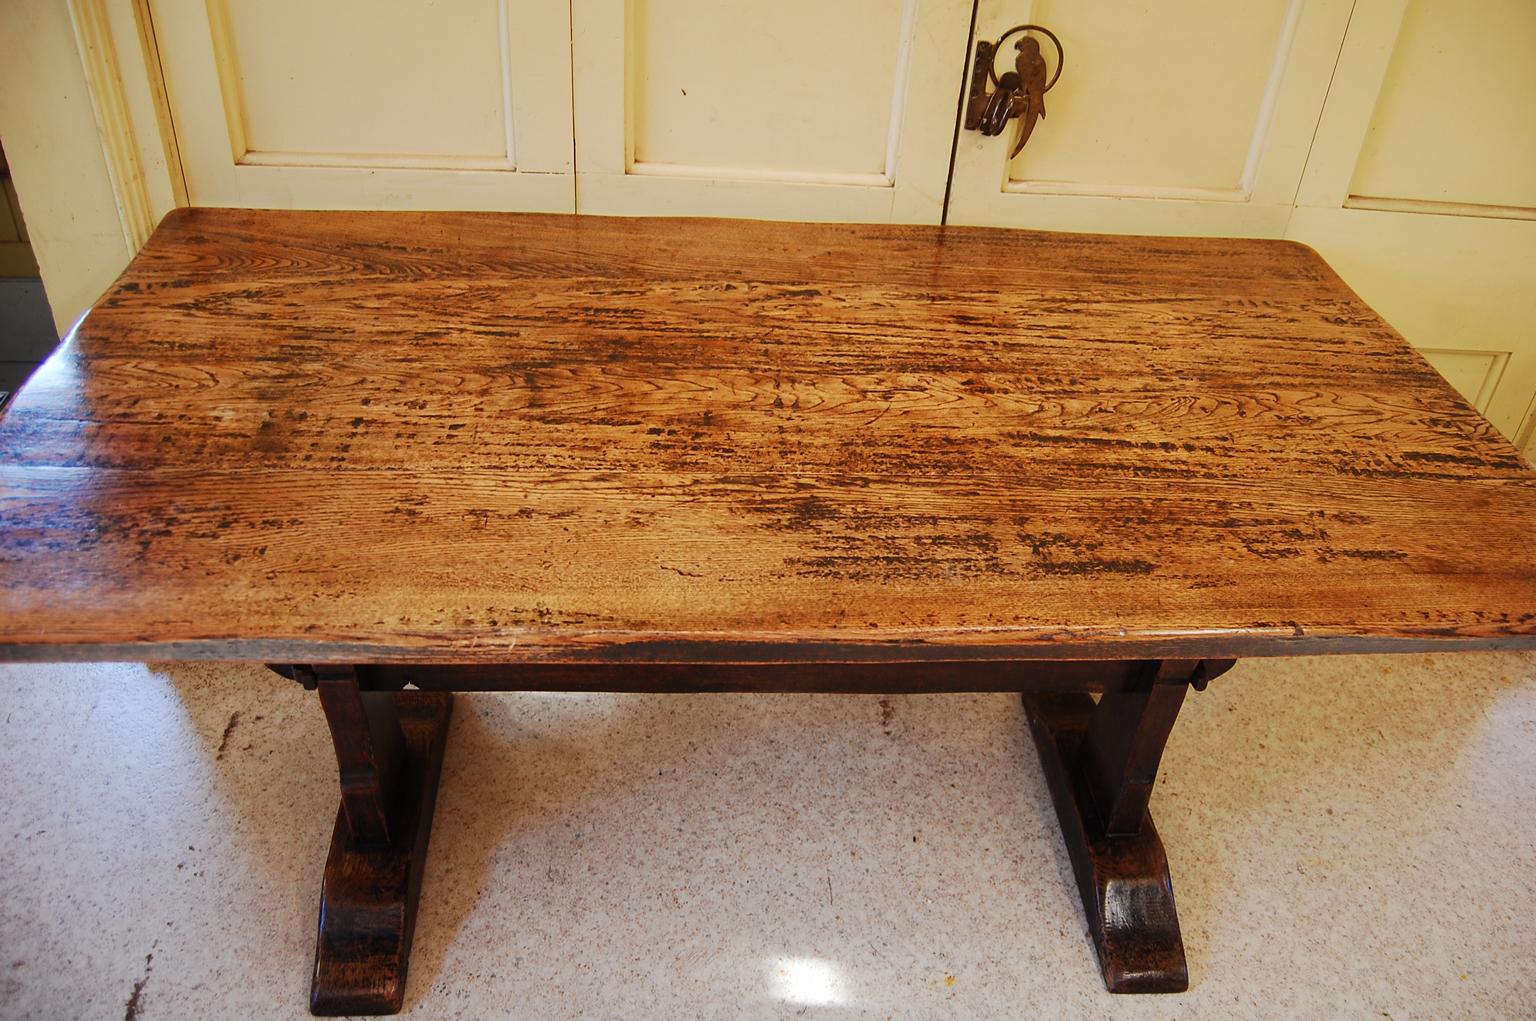  Englischer Bauernhoftisch aus Eiche im Stil des Arts and Crafts.  Dieser Tisch zeigt die Sorgfalt und das handwerkliche Können, die ein Markenzeichen der Arts-and-Crafts-Bewegung sind.  Die Platte ist aus dicken Eichenbrettern gefertigt, die von